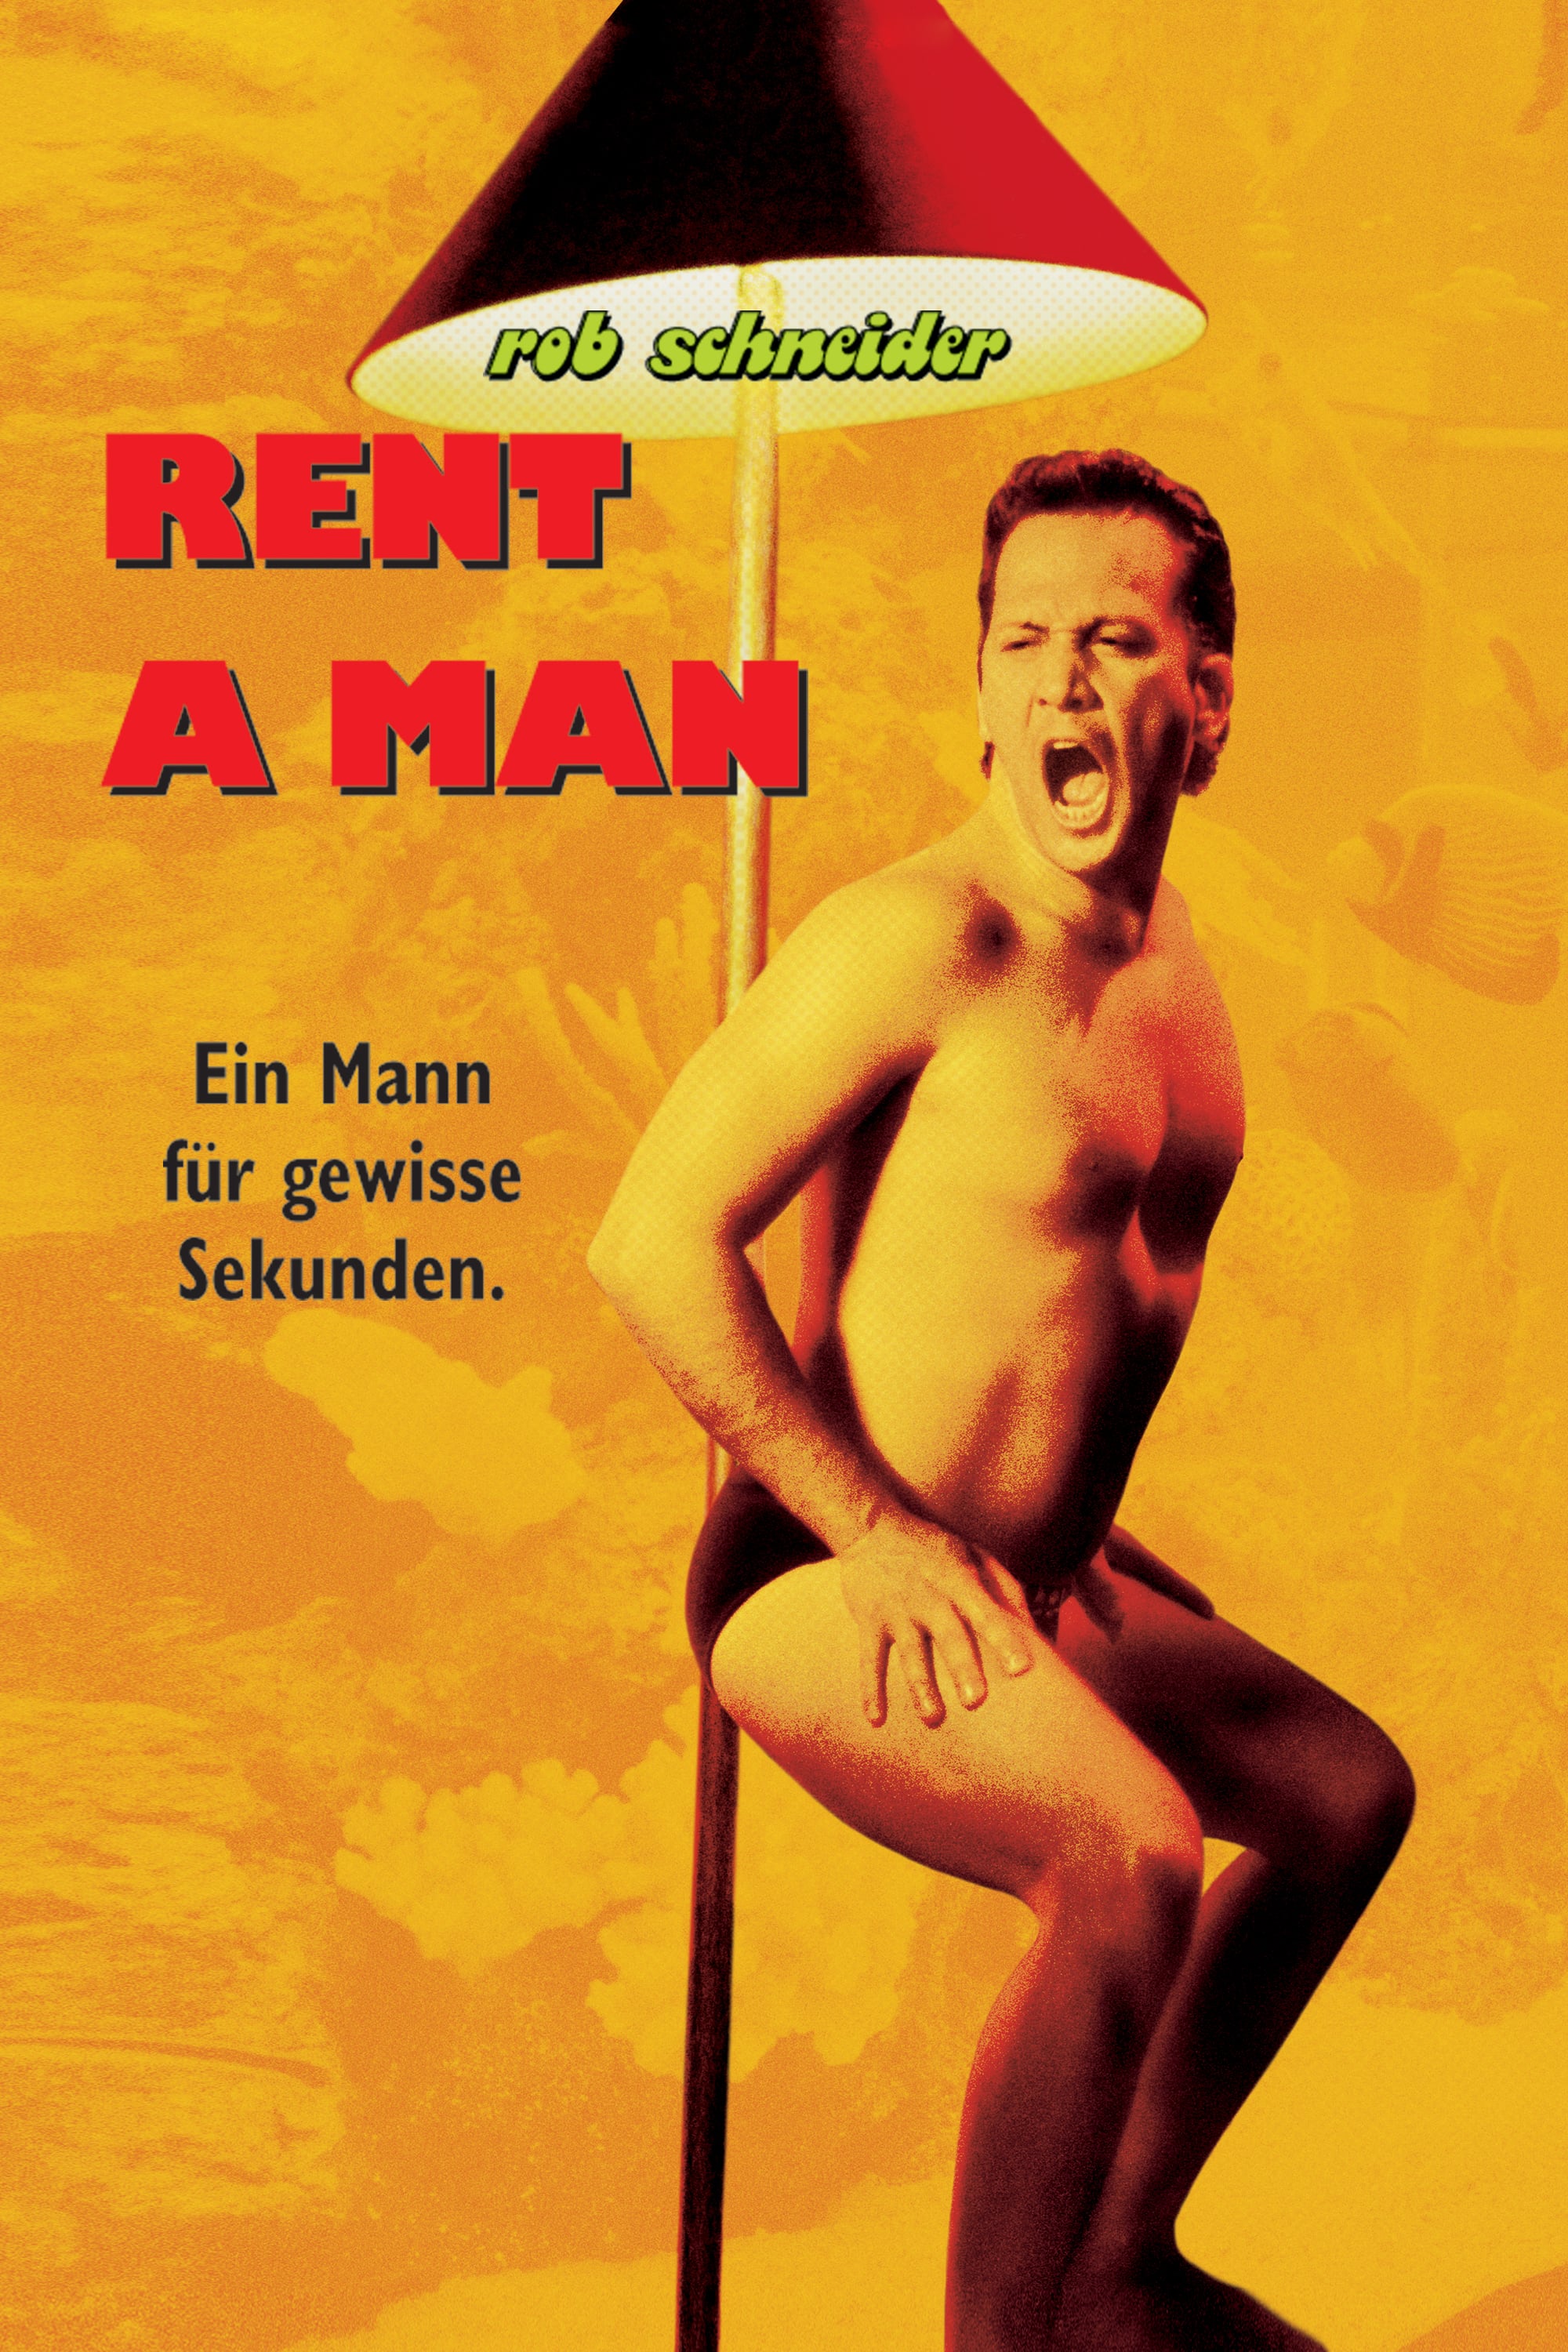 Plakat von "Rent a Man - Ein Mann für gewisse Sekunden"